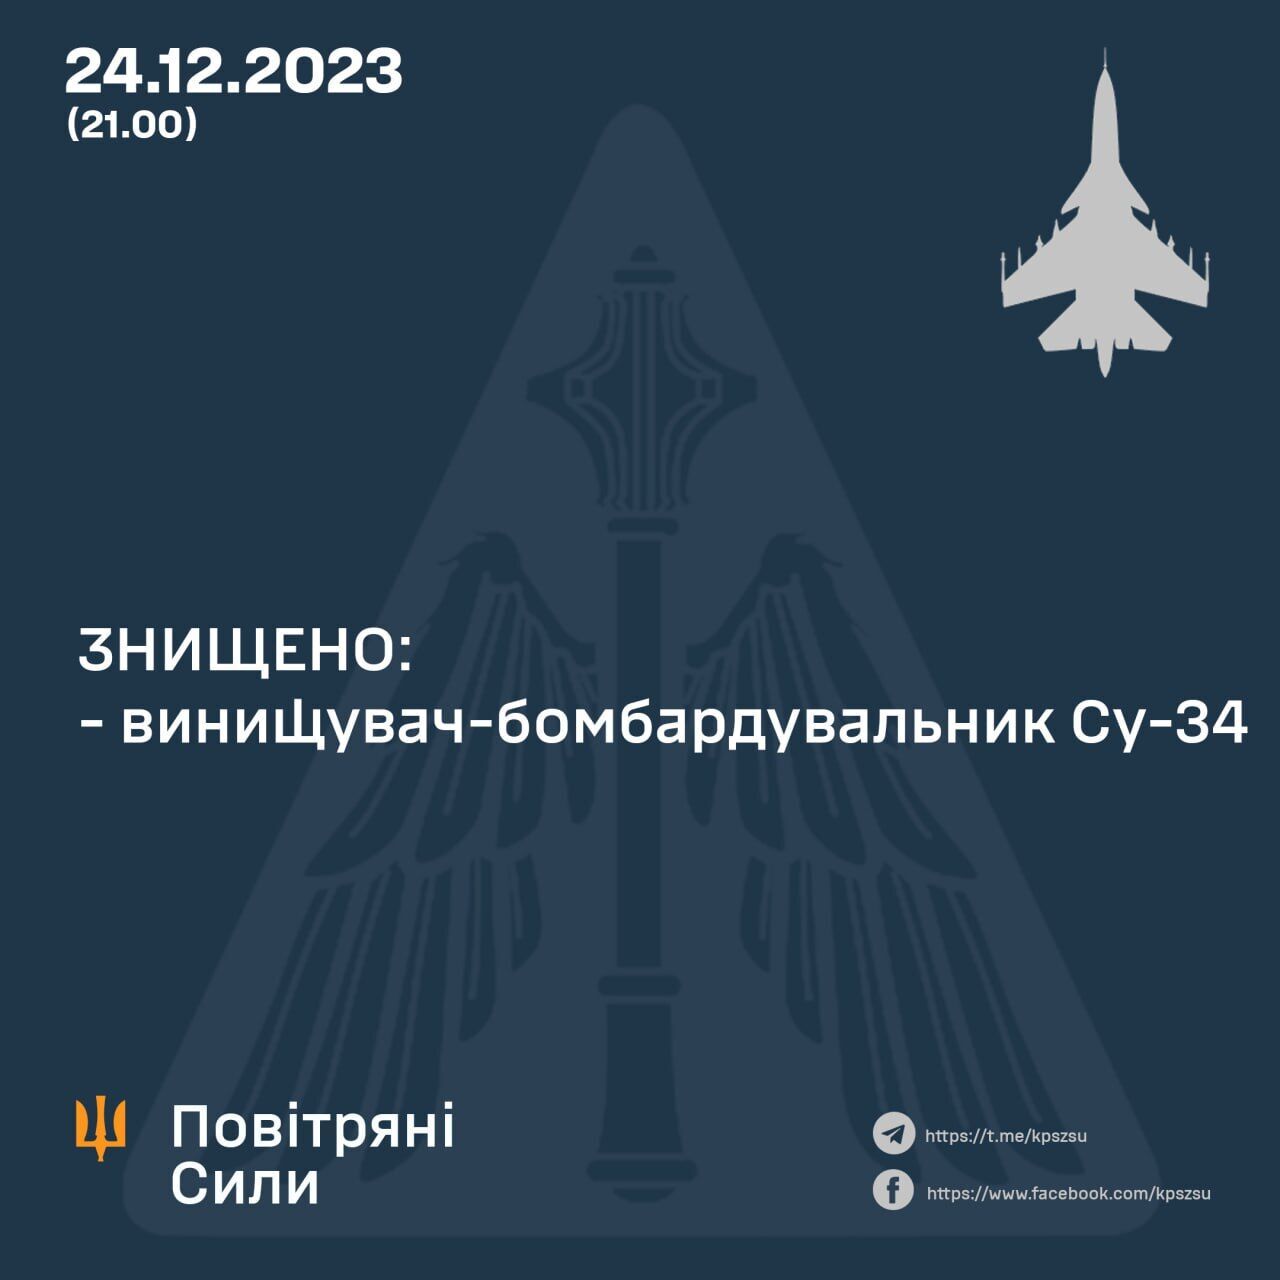 Ukraińskie siły zbrojne zestrzeliły rosyjski bombowiec Su-34, myśliwce Su-30 pod znakiem zapytania: szczegóły